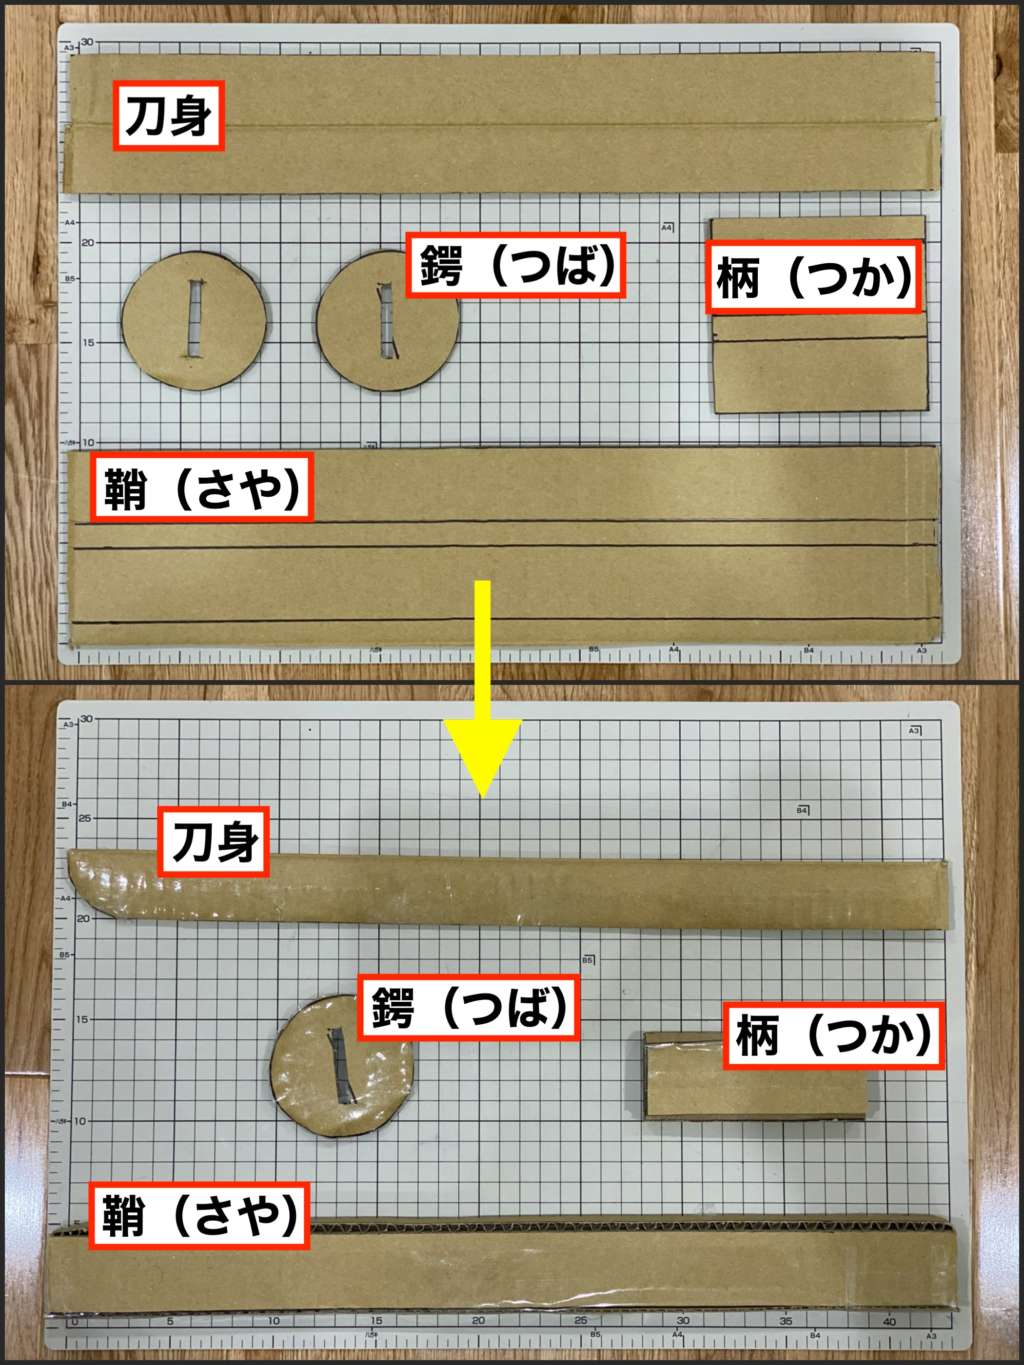 鬼滅の刃 日輪刀をダンボールで作る方法 設計図も詳しく記載しています Nomanoma 面白そうの攻略サイト